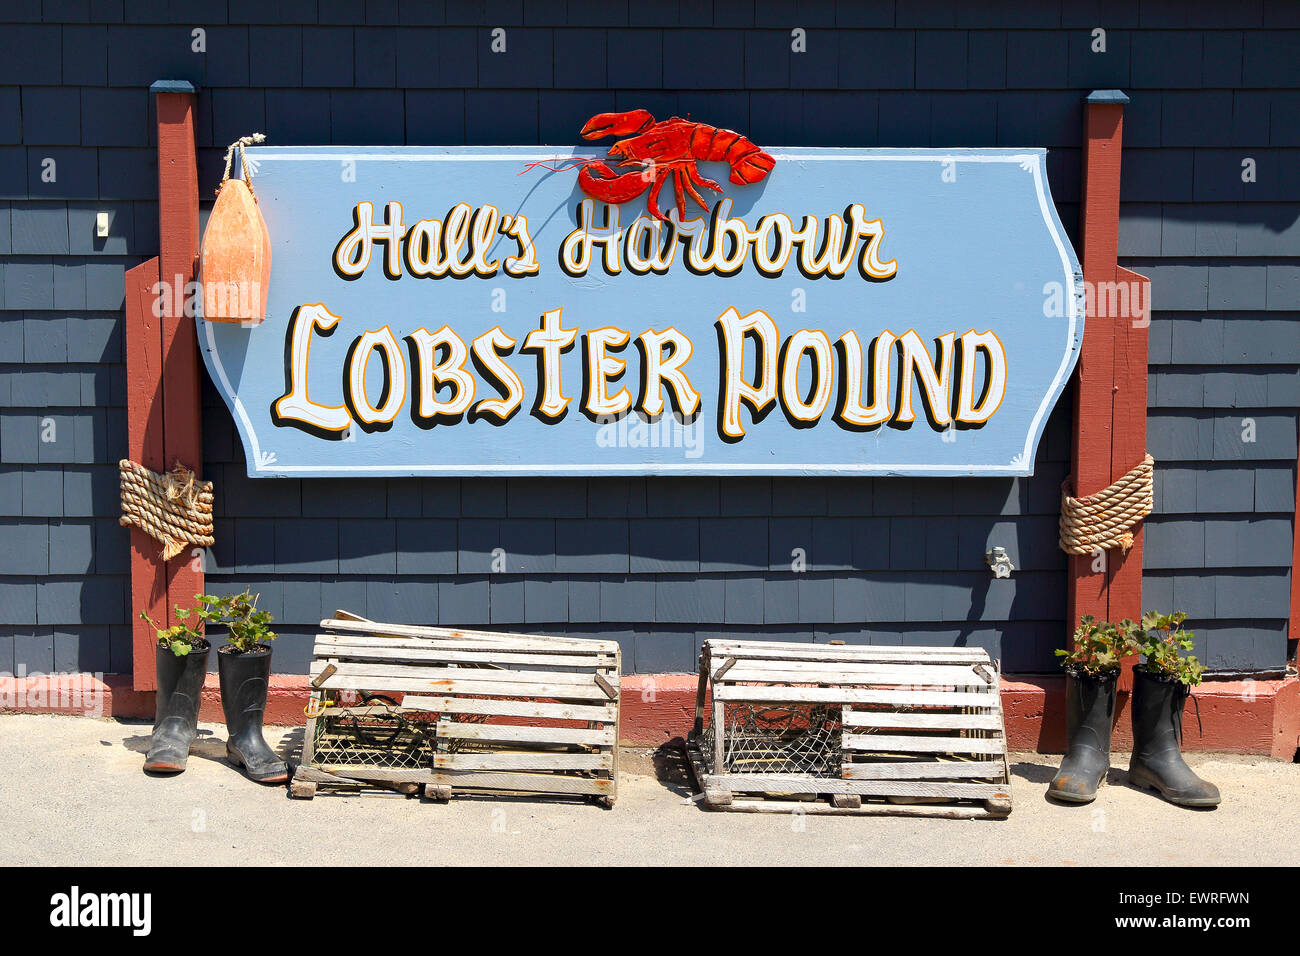 Baia di Fundy, Nova Scotia, Canada. Hall il porto del villaggio di pescatori Lobster Pound restaurant sign. Padiglioni del porto. Foto Stock